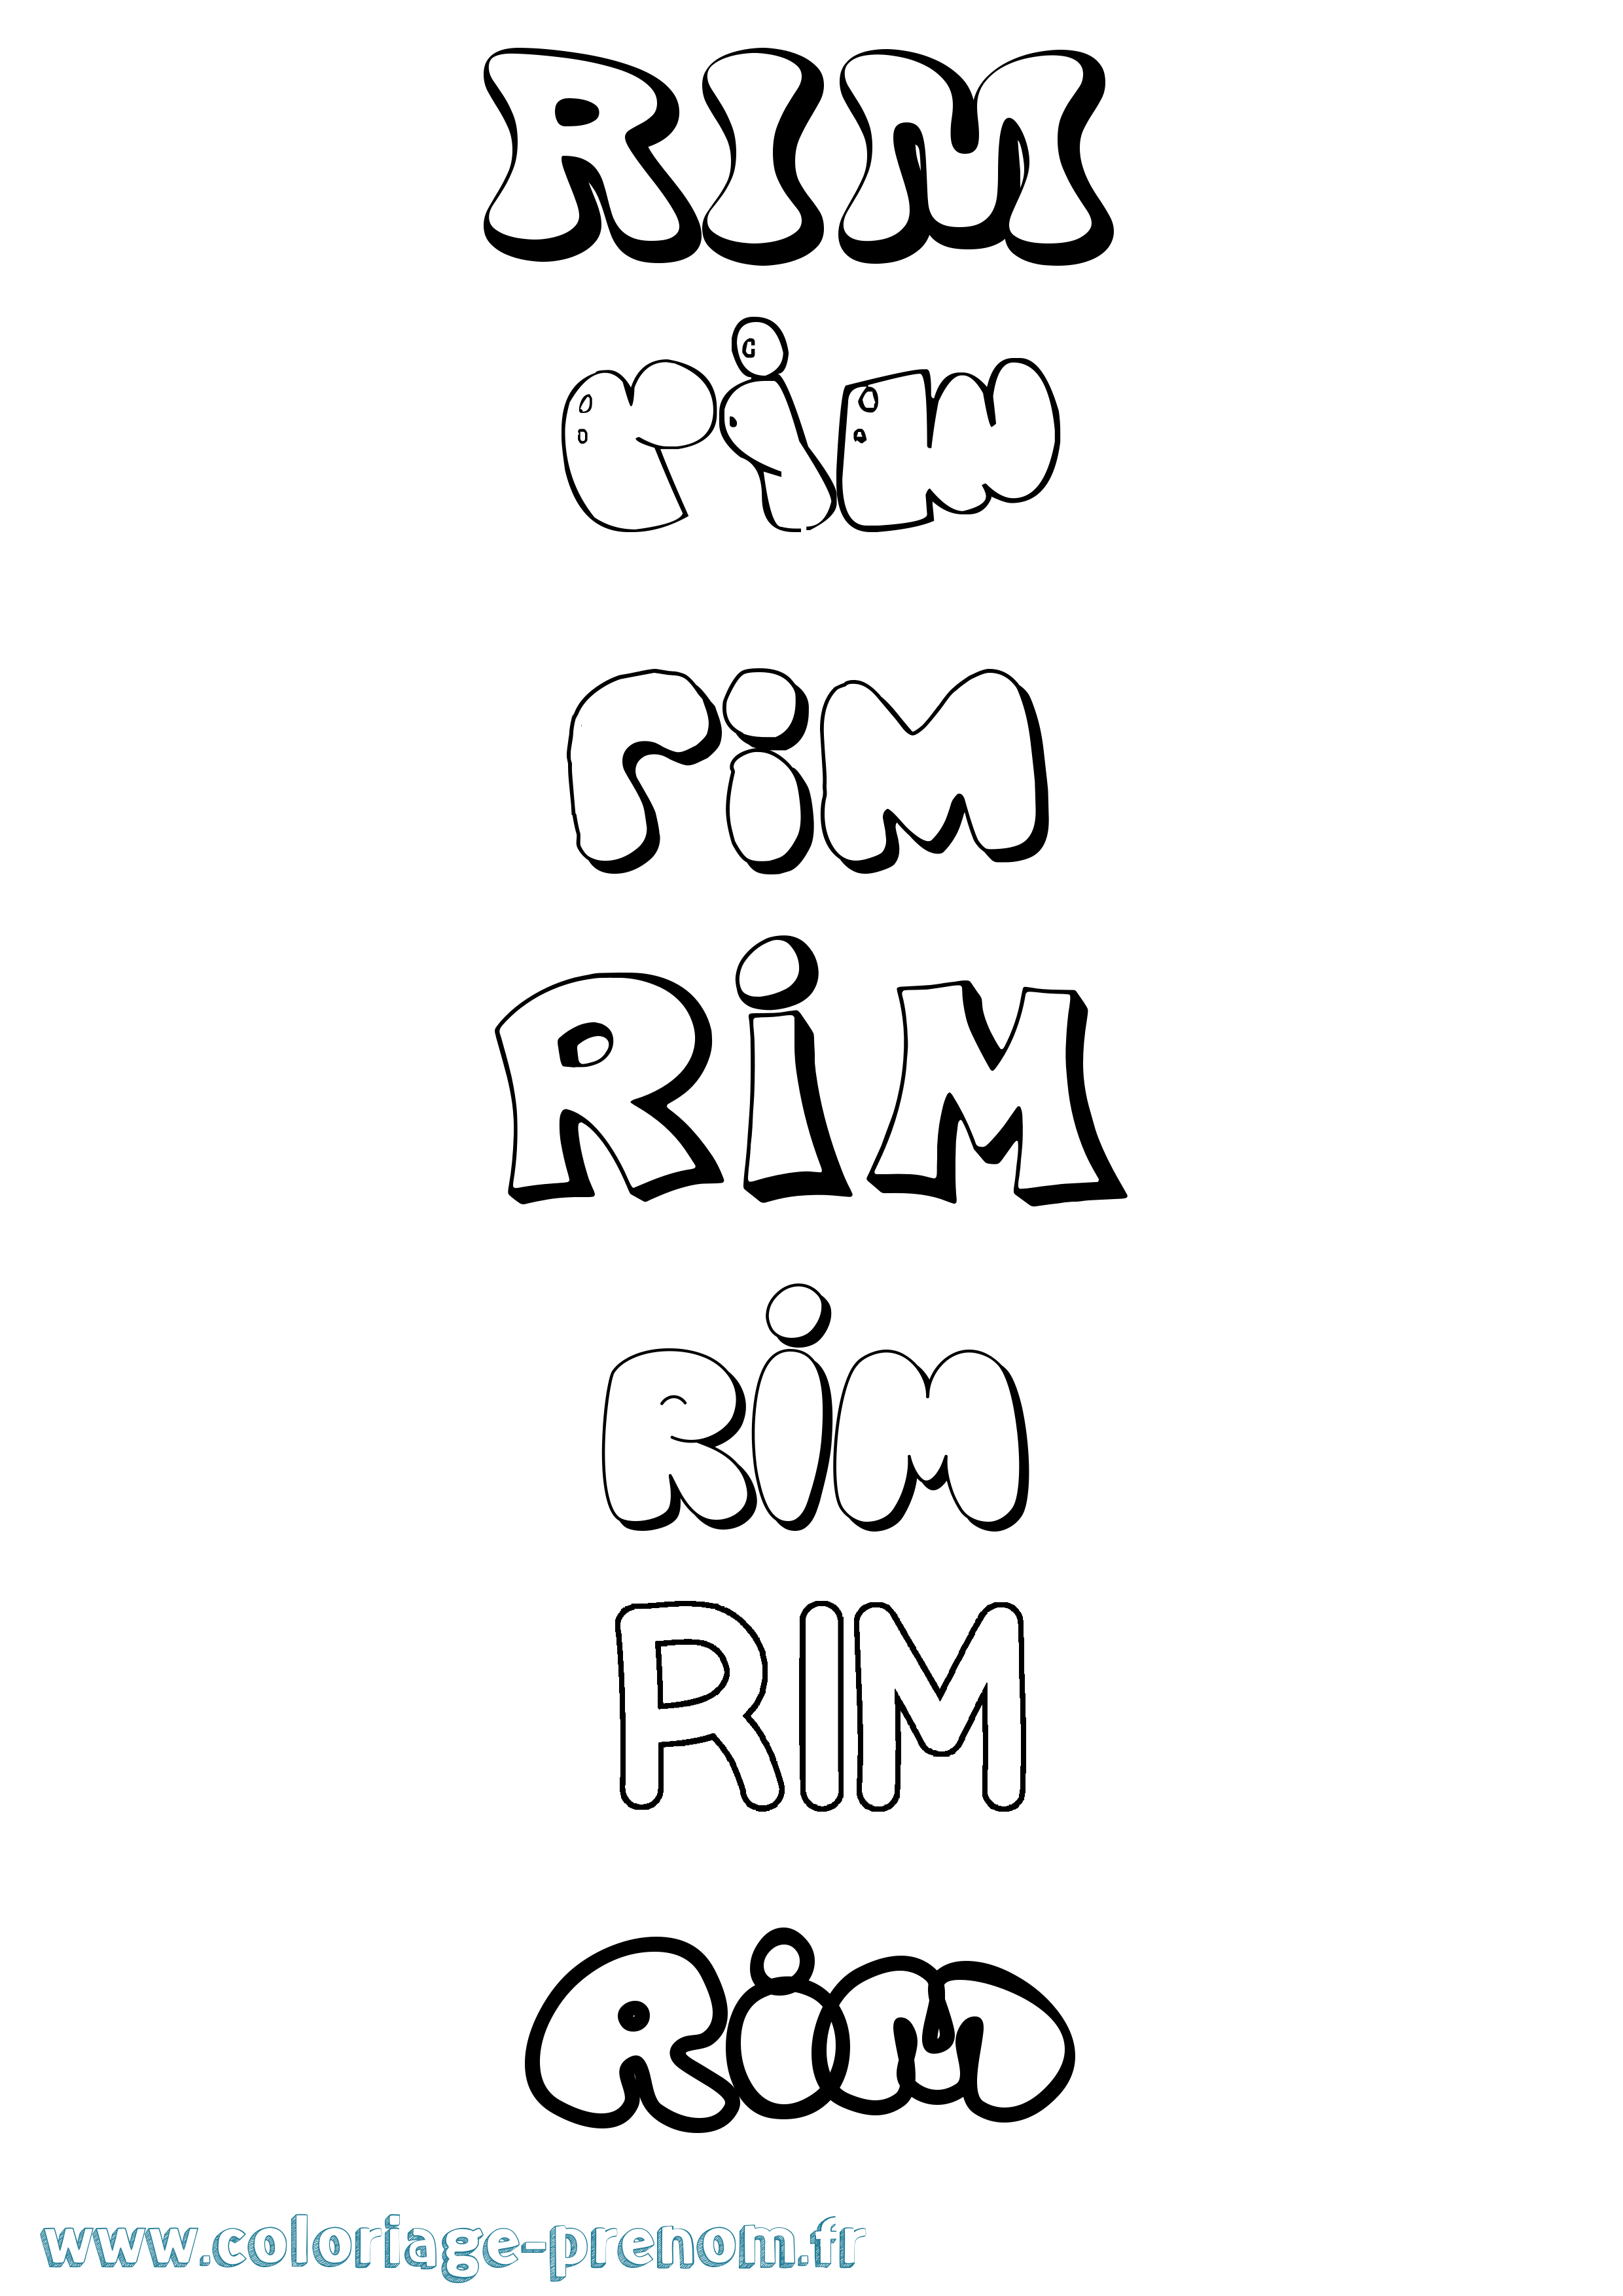 Coloriage prénom Rim